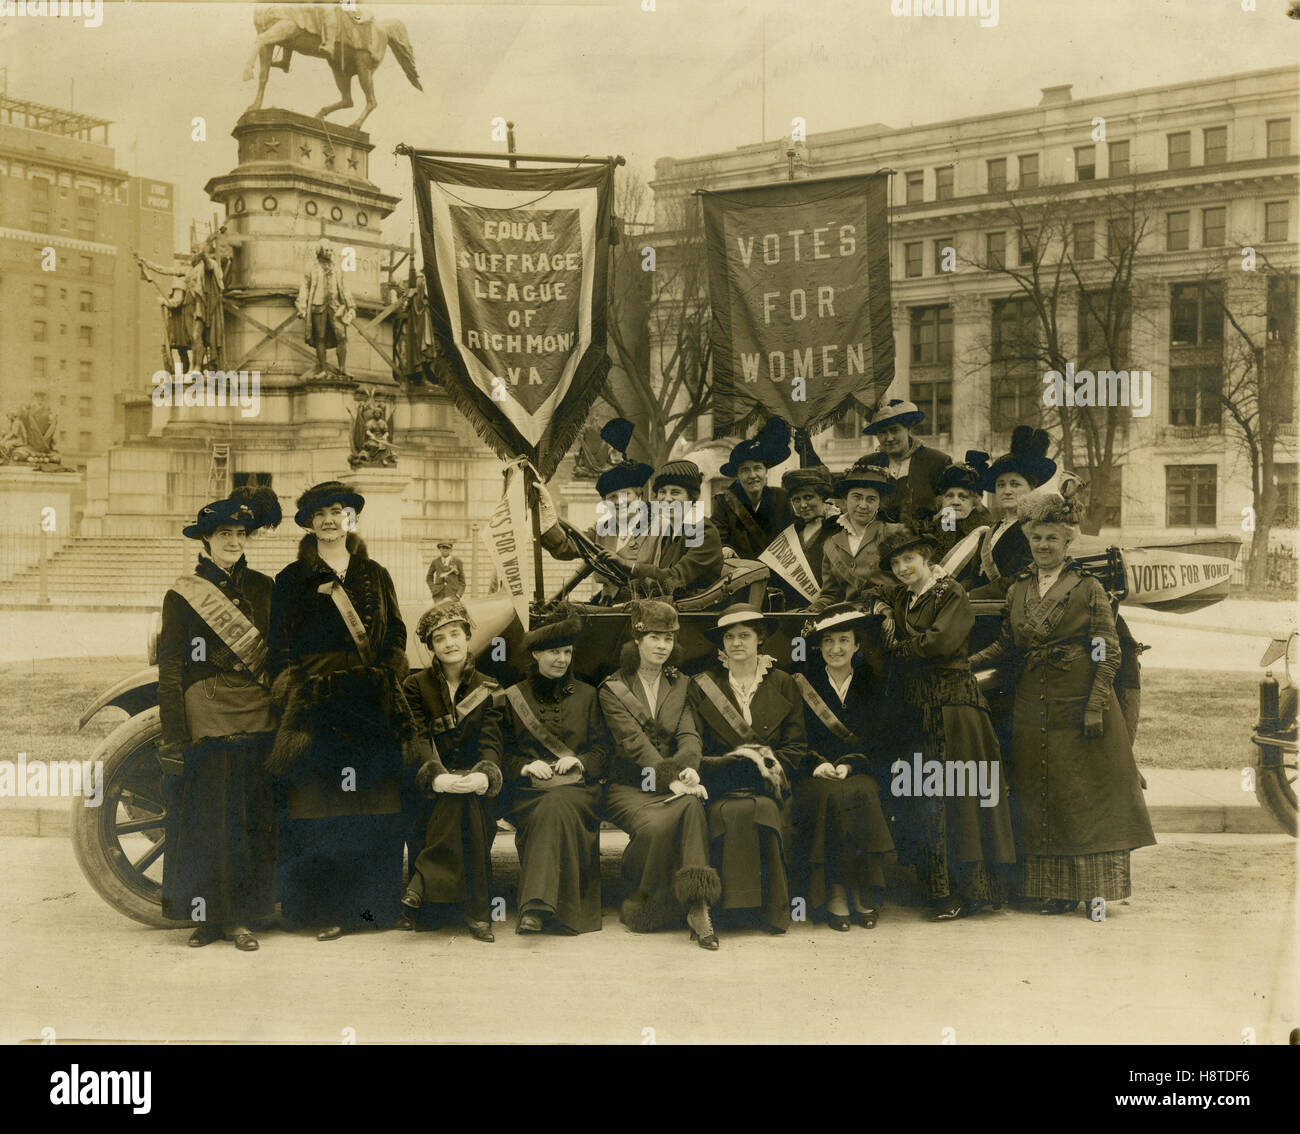 Gleiche Wahlrecht Liga von Richmond, Virginia. Mai 1915. Stockfoto